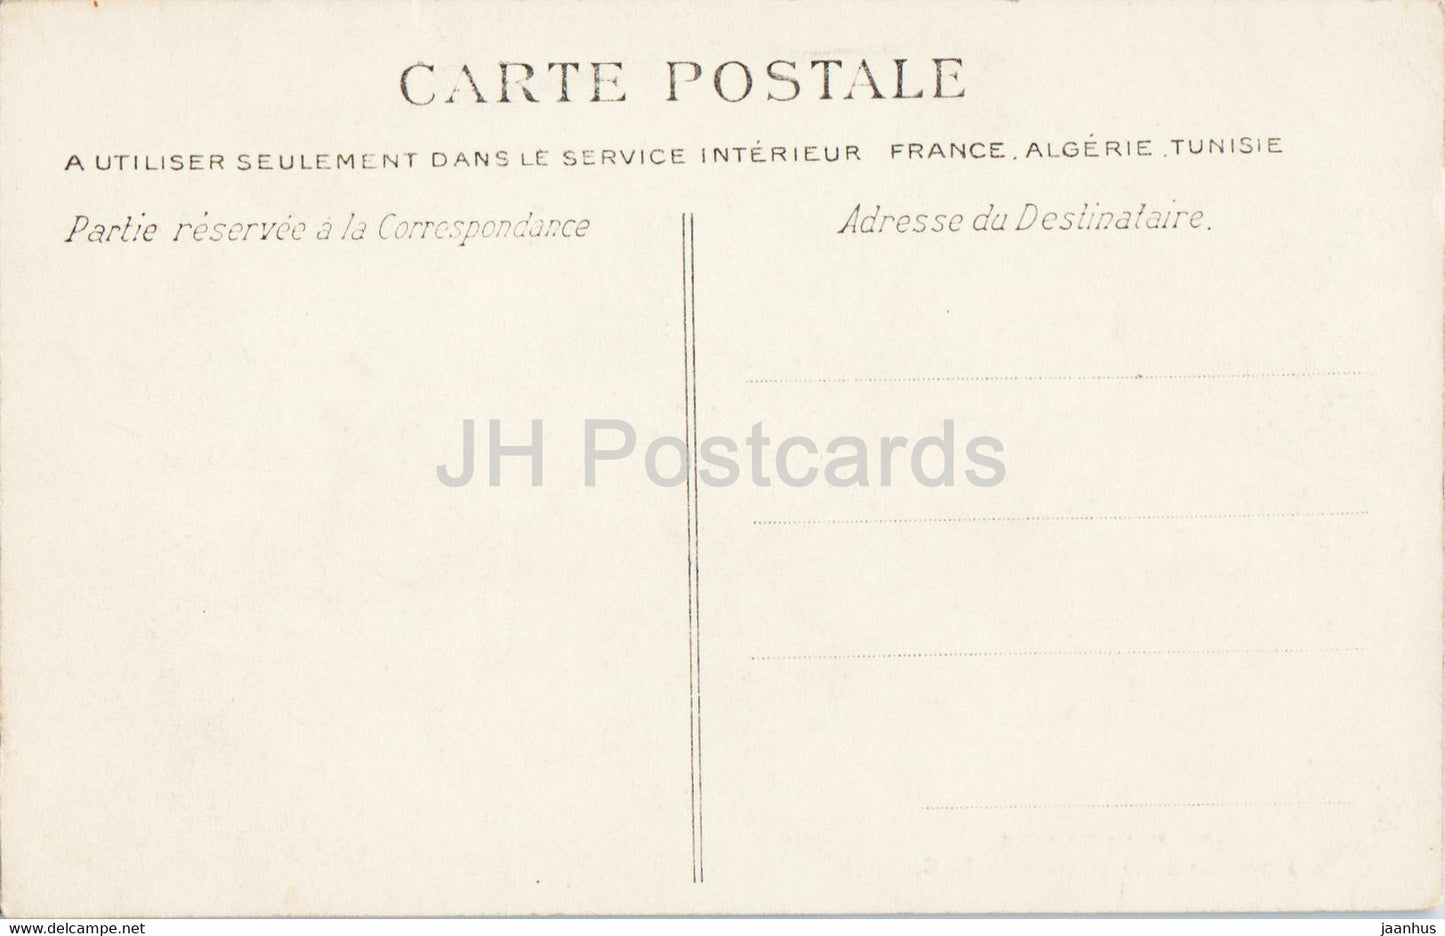 Villennes - Interieur de la Grotte - Höhle - 19 - alte Postkarte - Frankreich - unbenutzt